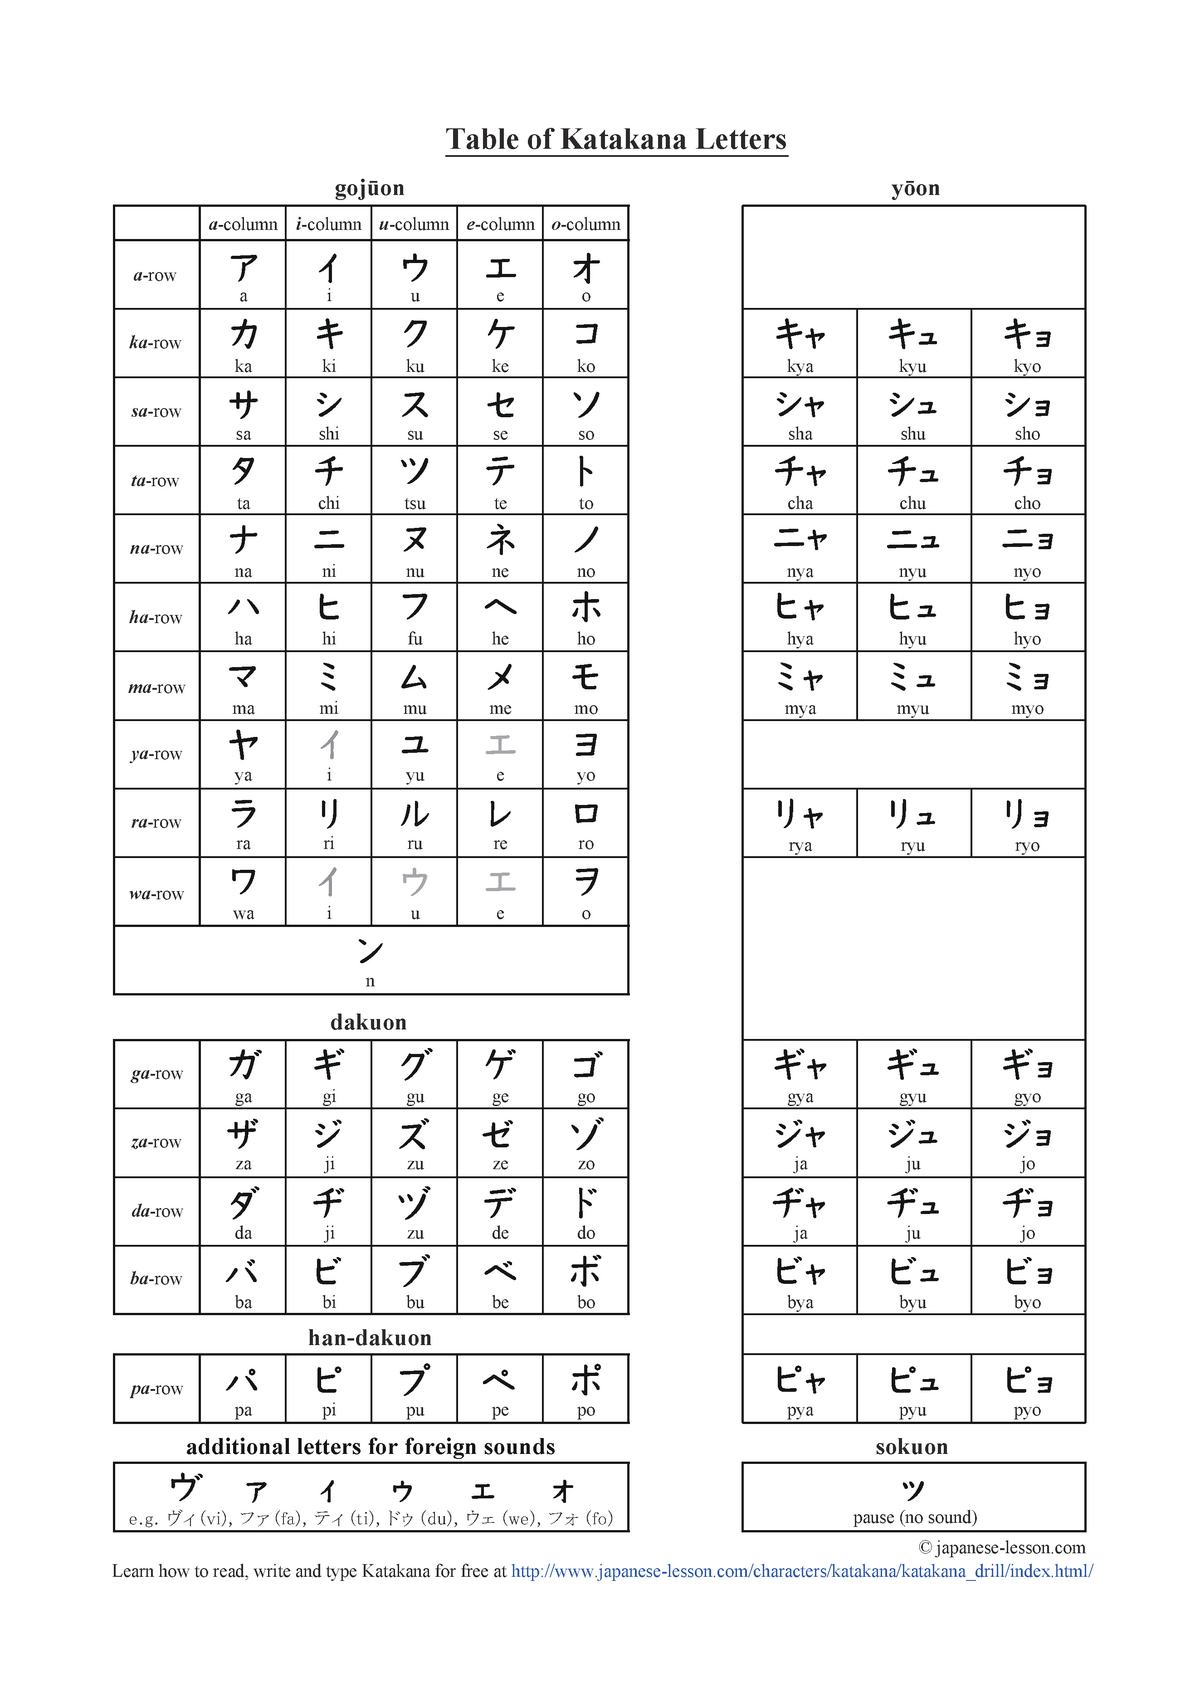 Katakana table - necessary to remember - Table of Katakana Letters ...